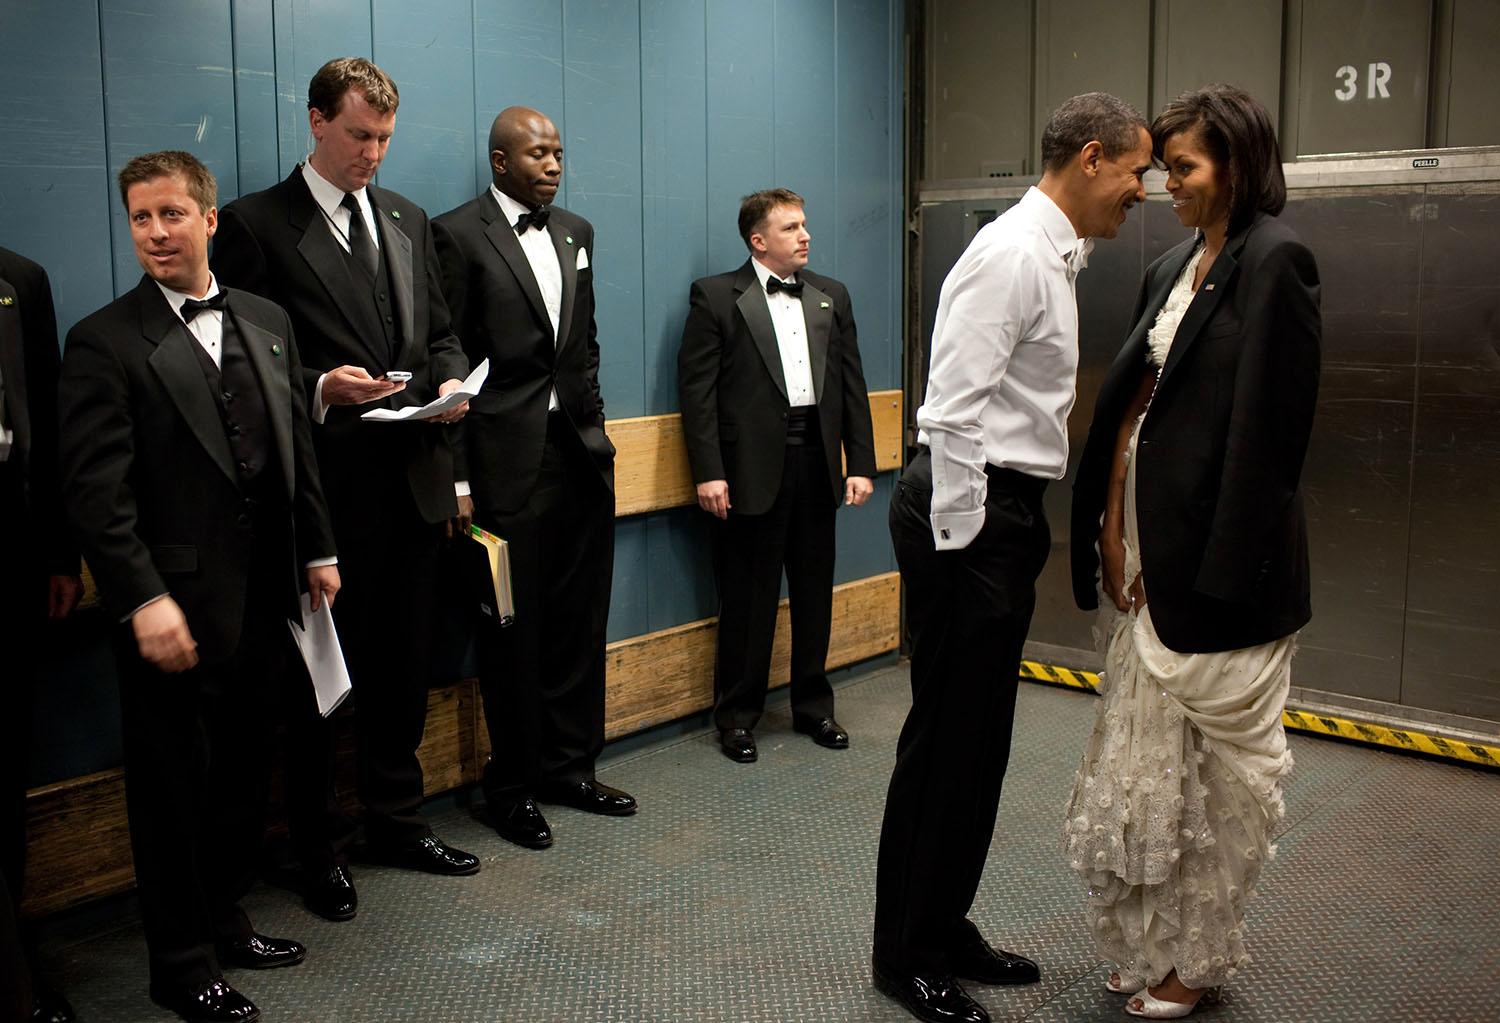 Mer privat än så här blir det sällan för en president, som ständigt är omgiven av medarbetare och vakter. "Medarbetarna försöker titta bort när Obama har en semiprivat ögonblick strax före en gala år 2009", säger Souza om den här bilden.